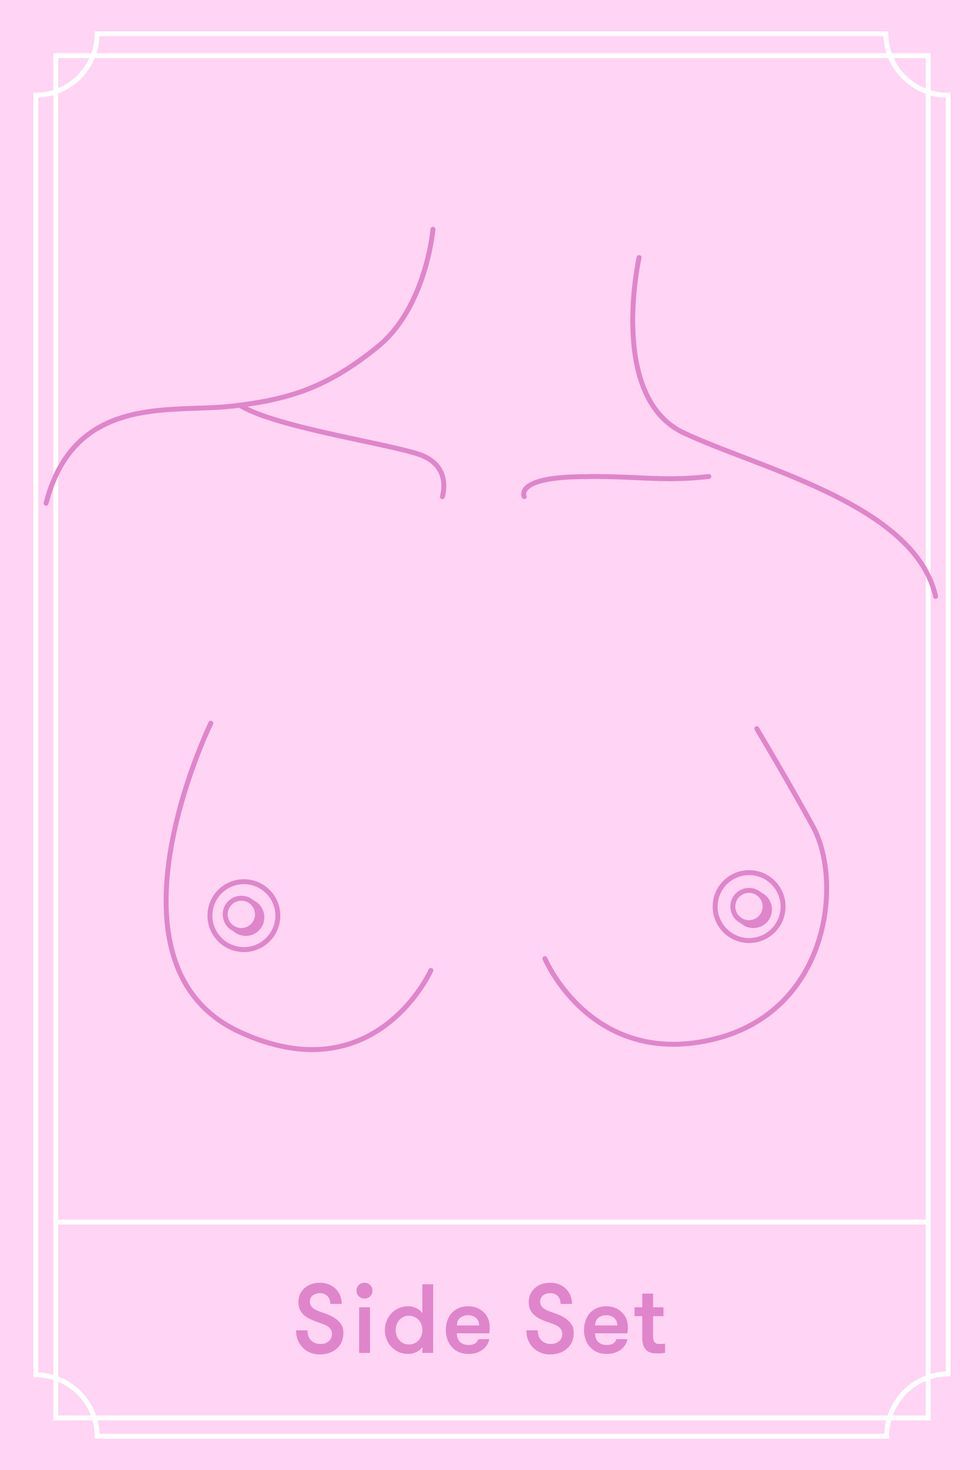 Side set breast shapes